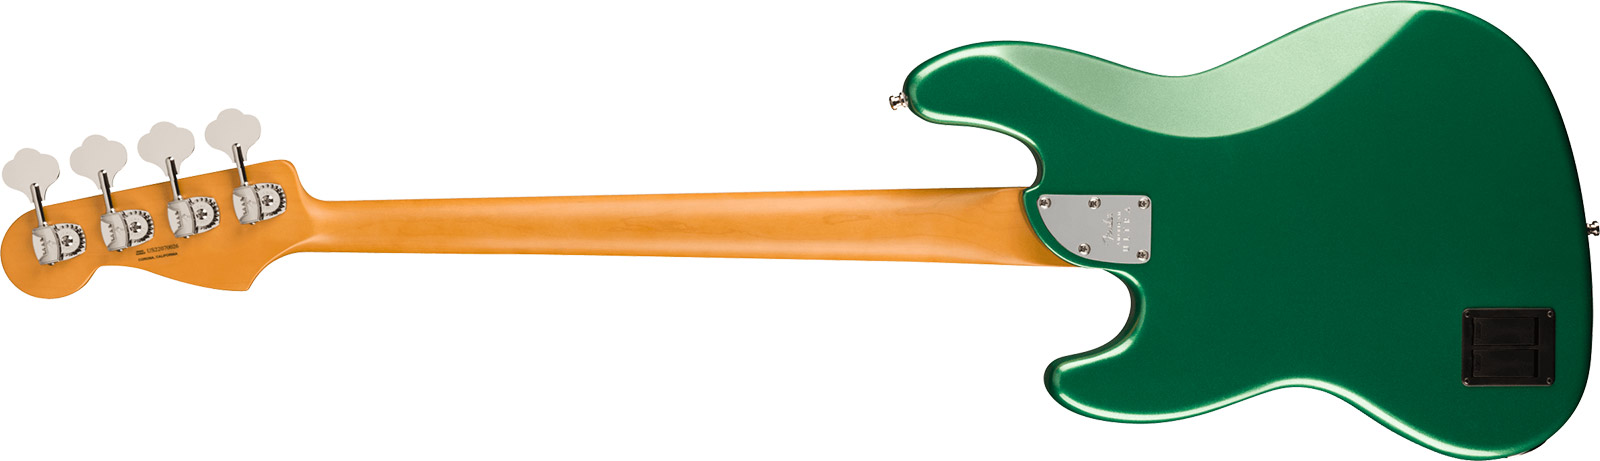 Fender Jazz Bass American Ultra Ltd Usa Active Eb - Mystic Pine Green - Bajo eléctrico de cuerpo sólido - Variation 1